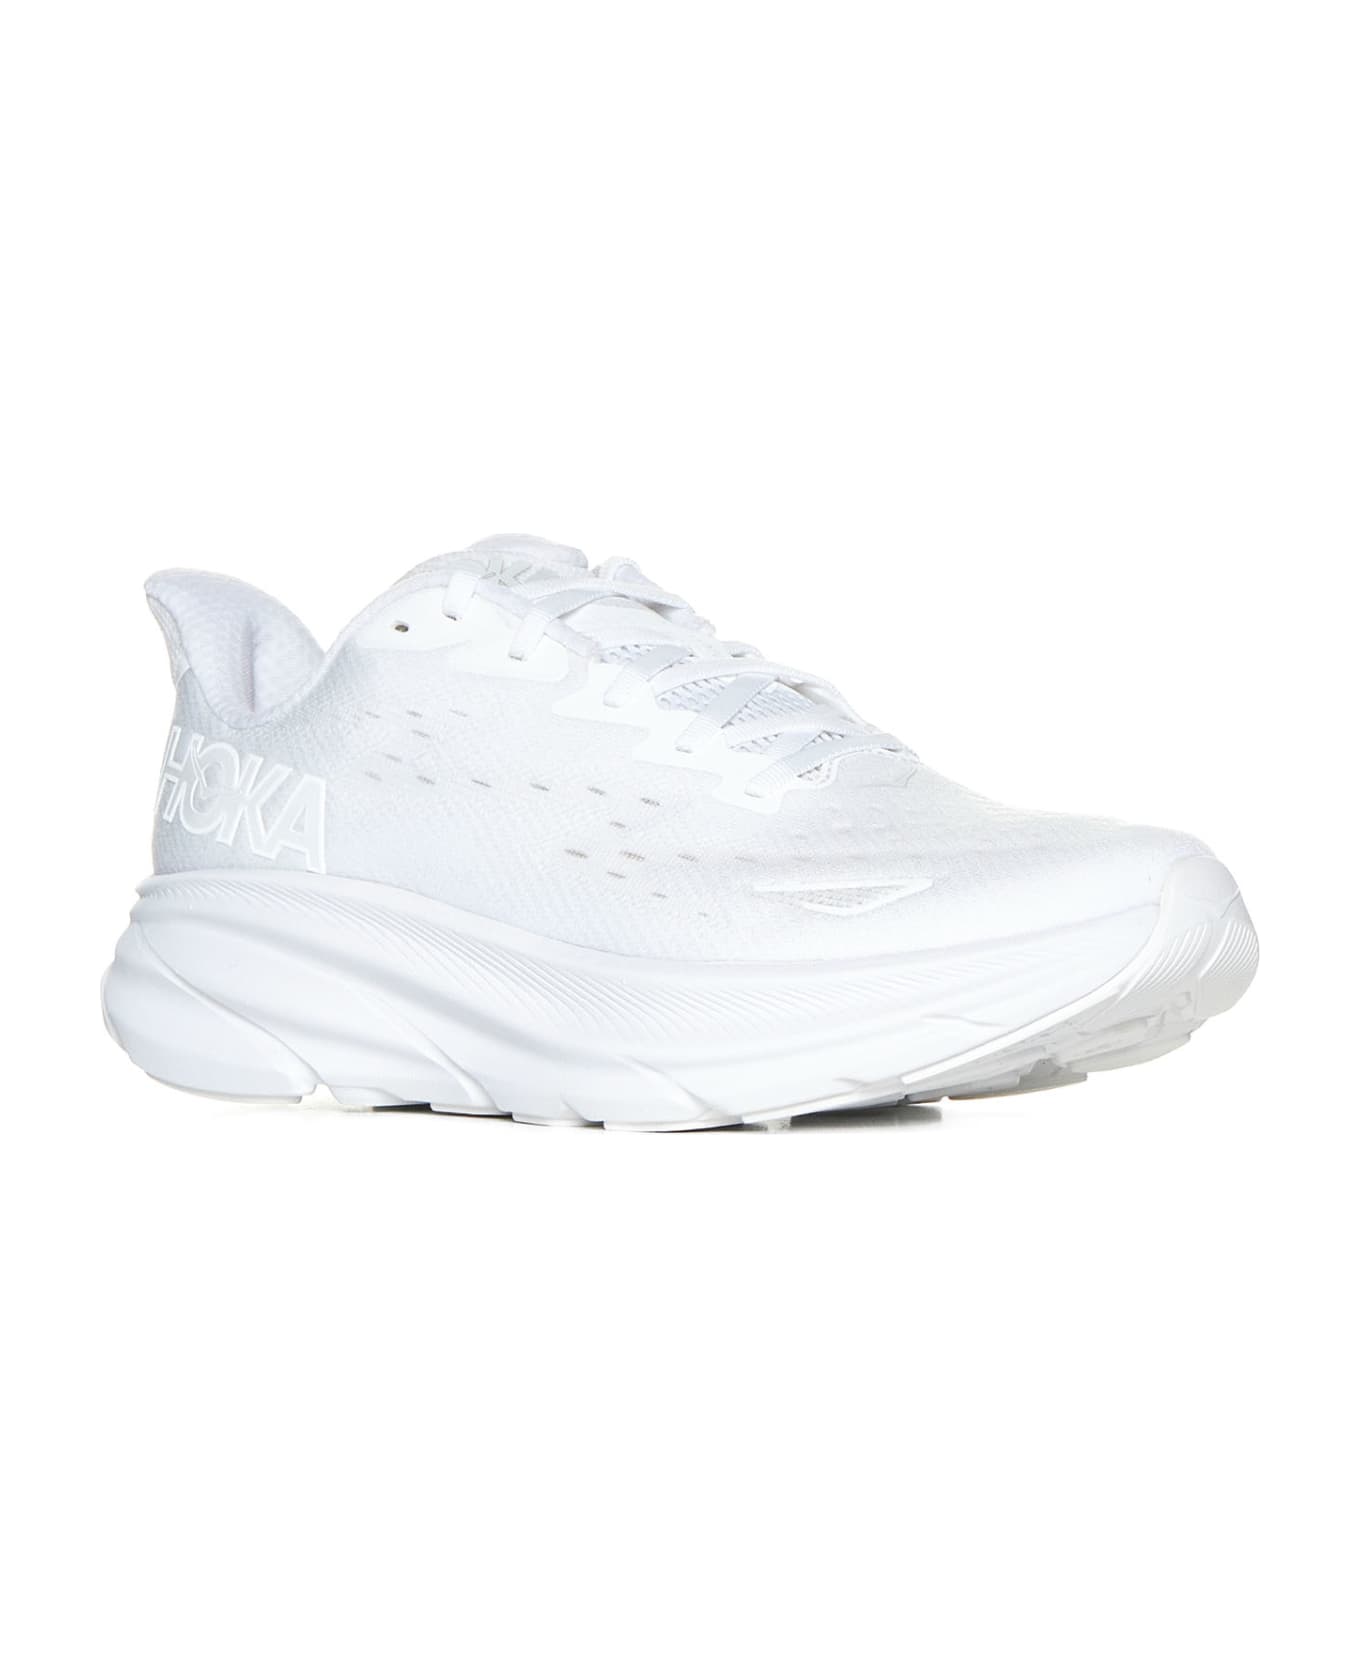 Hoka Sneakers - White white スニーカー